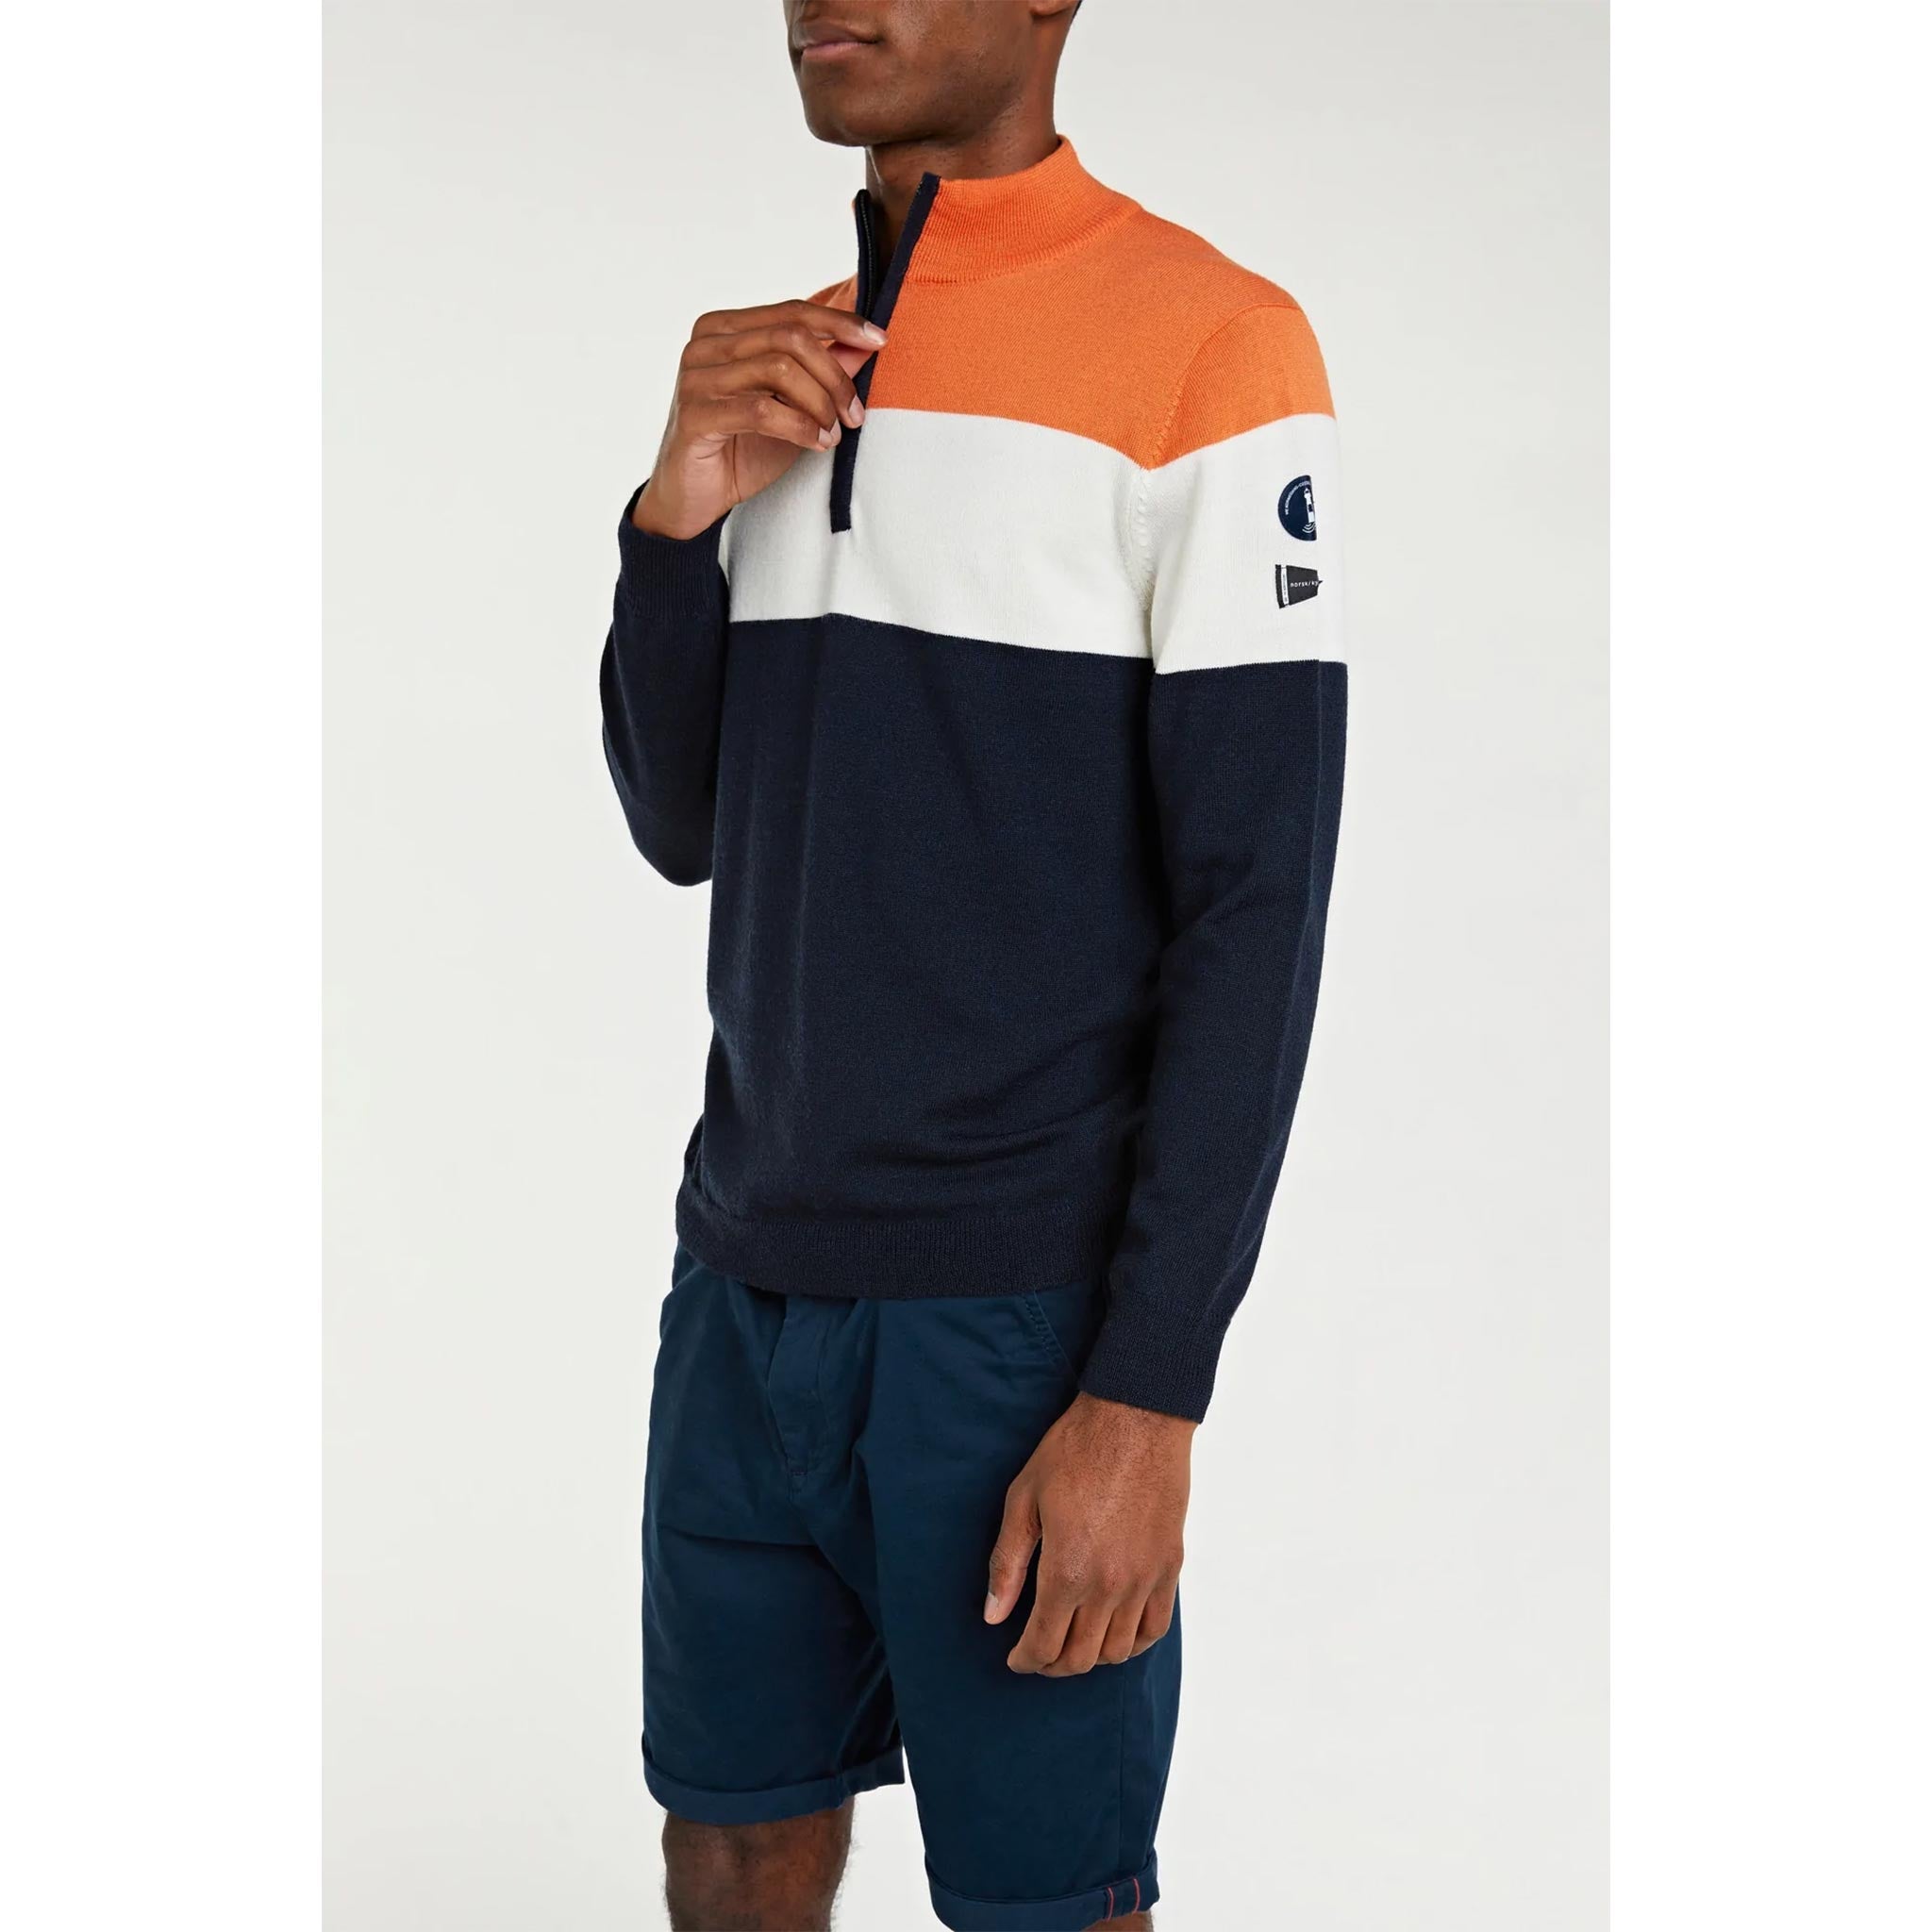 Eigeroy Zip-Up Sweater in Navy/Orange/White